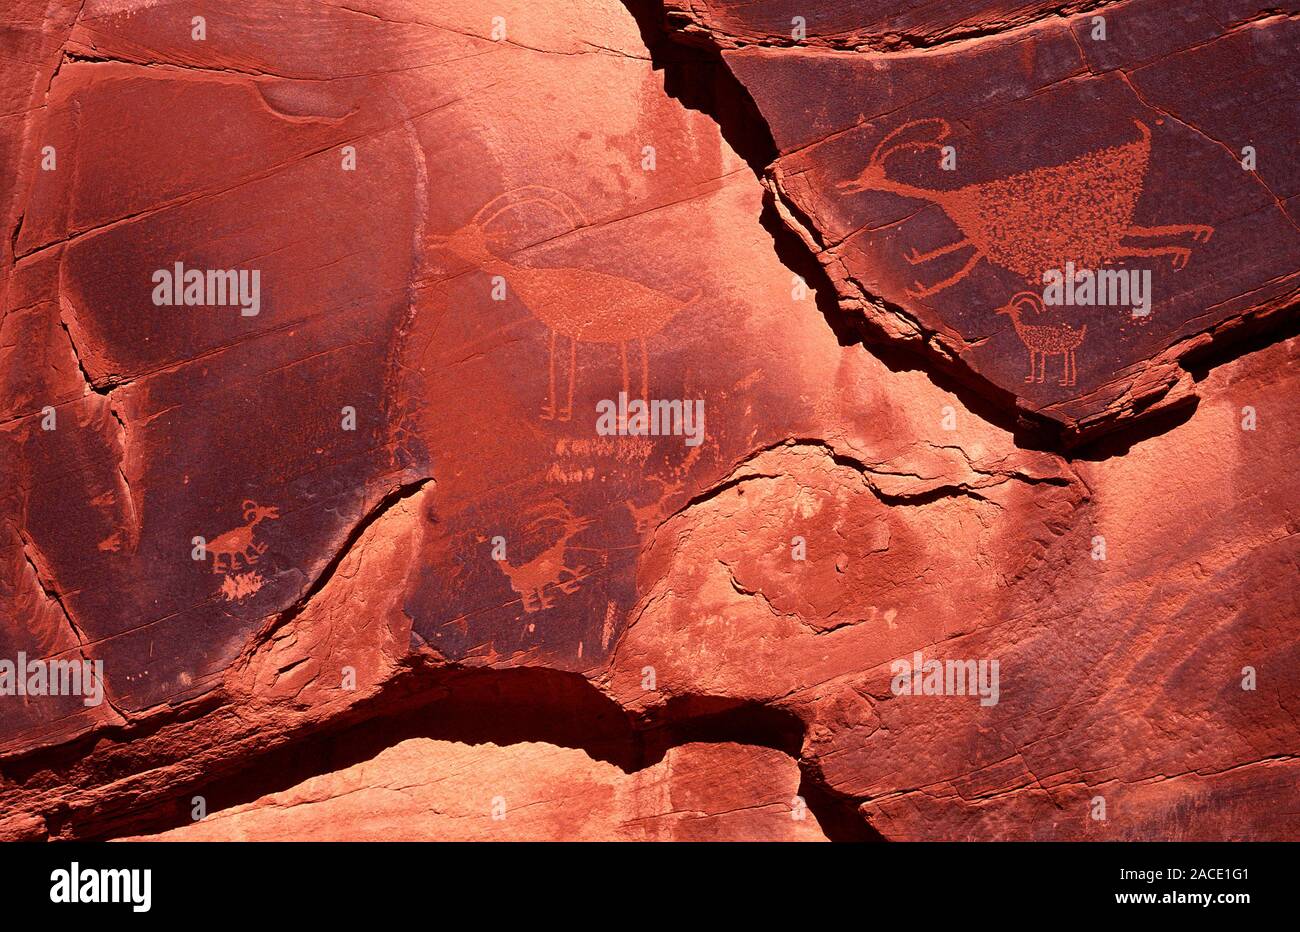 Geografie, Reisen, Felsenlandschaft, Monument Valley NP, Felszeichnungen, Felsen, Schriftzeichen, Sandstein, Arizona, USA.  Geography, Travel, Sandsto Stock Photo